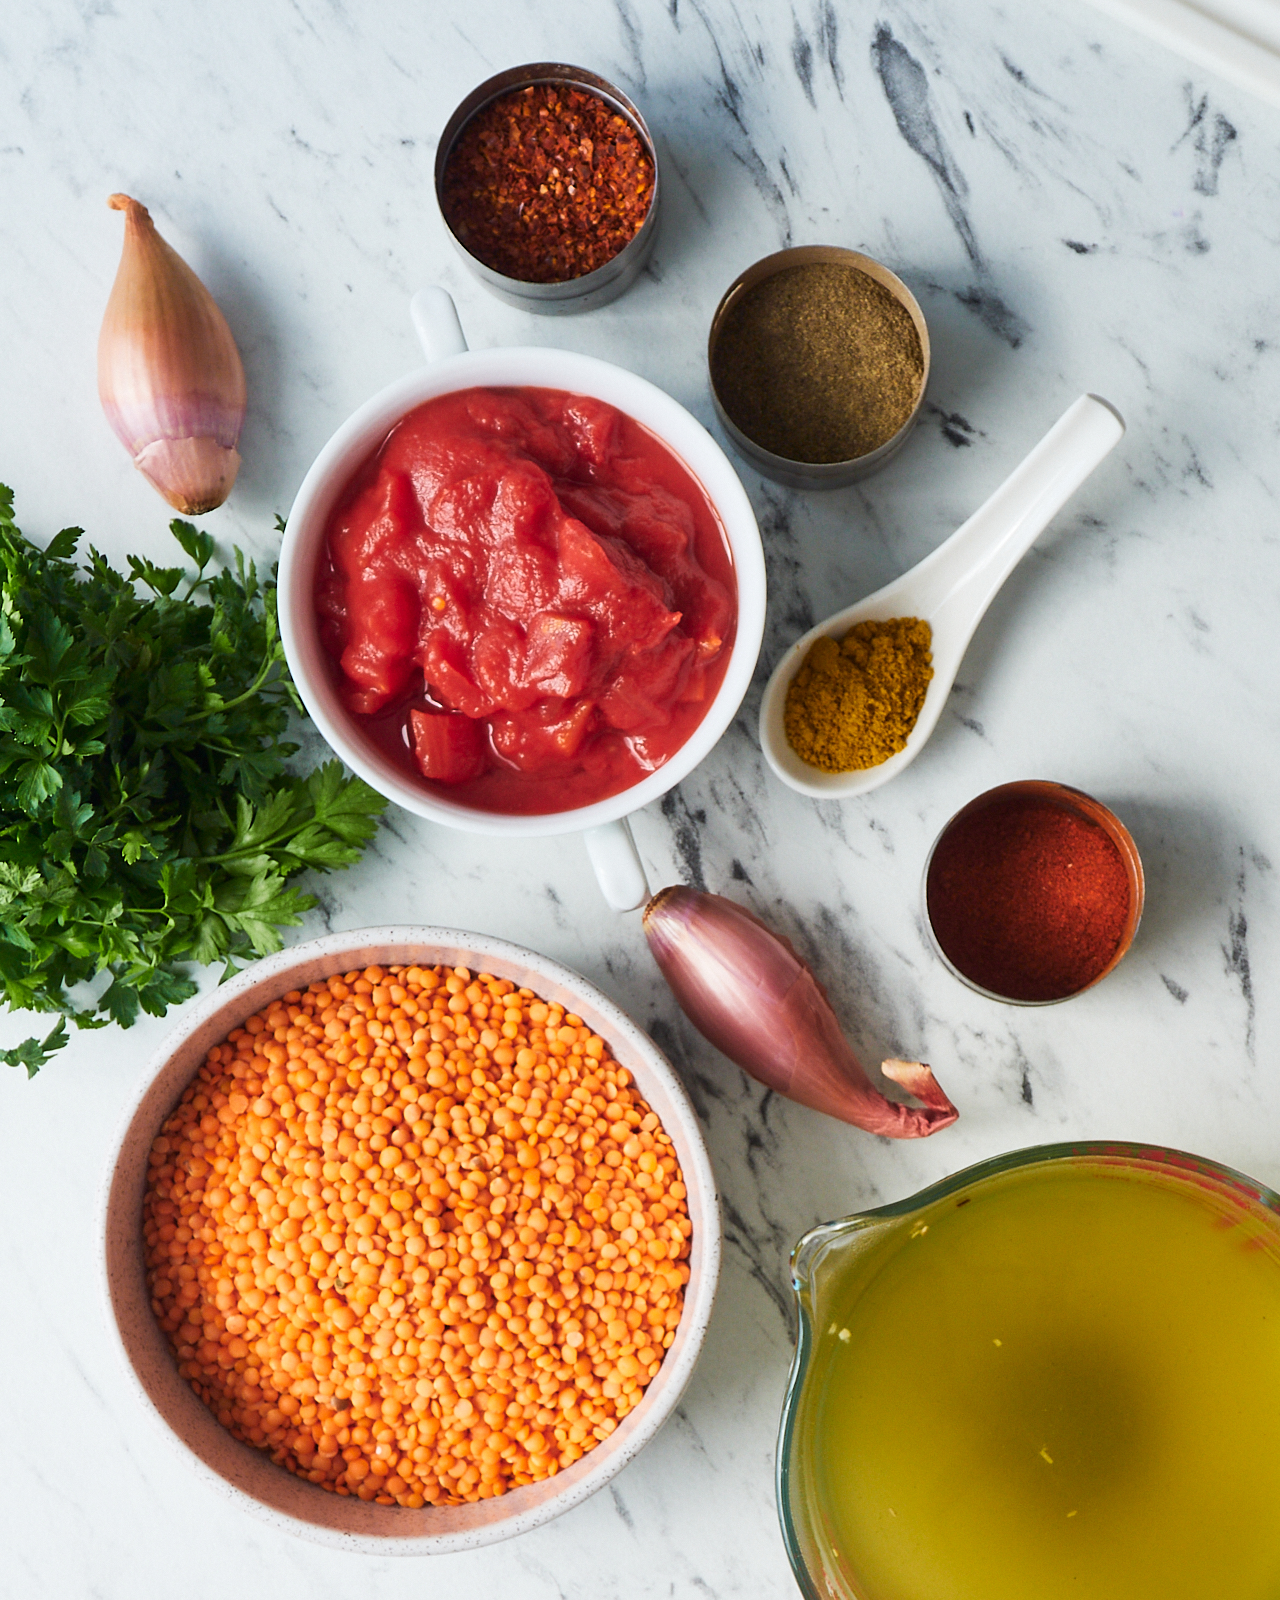 moroccan lentil soup recipe